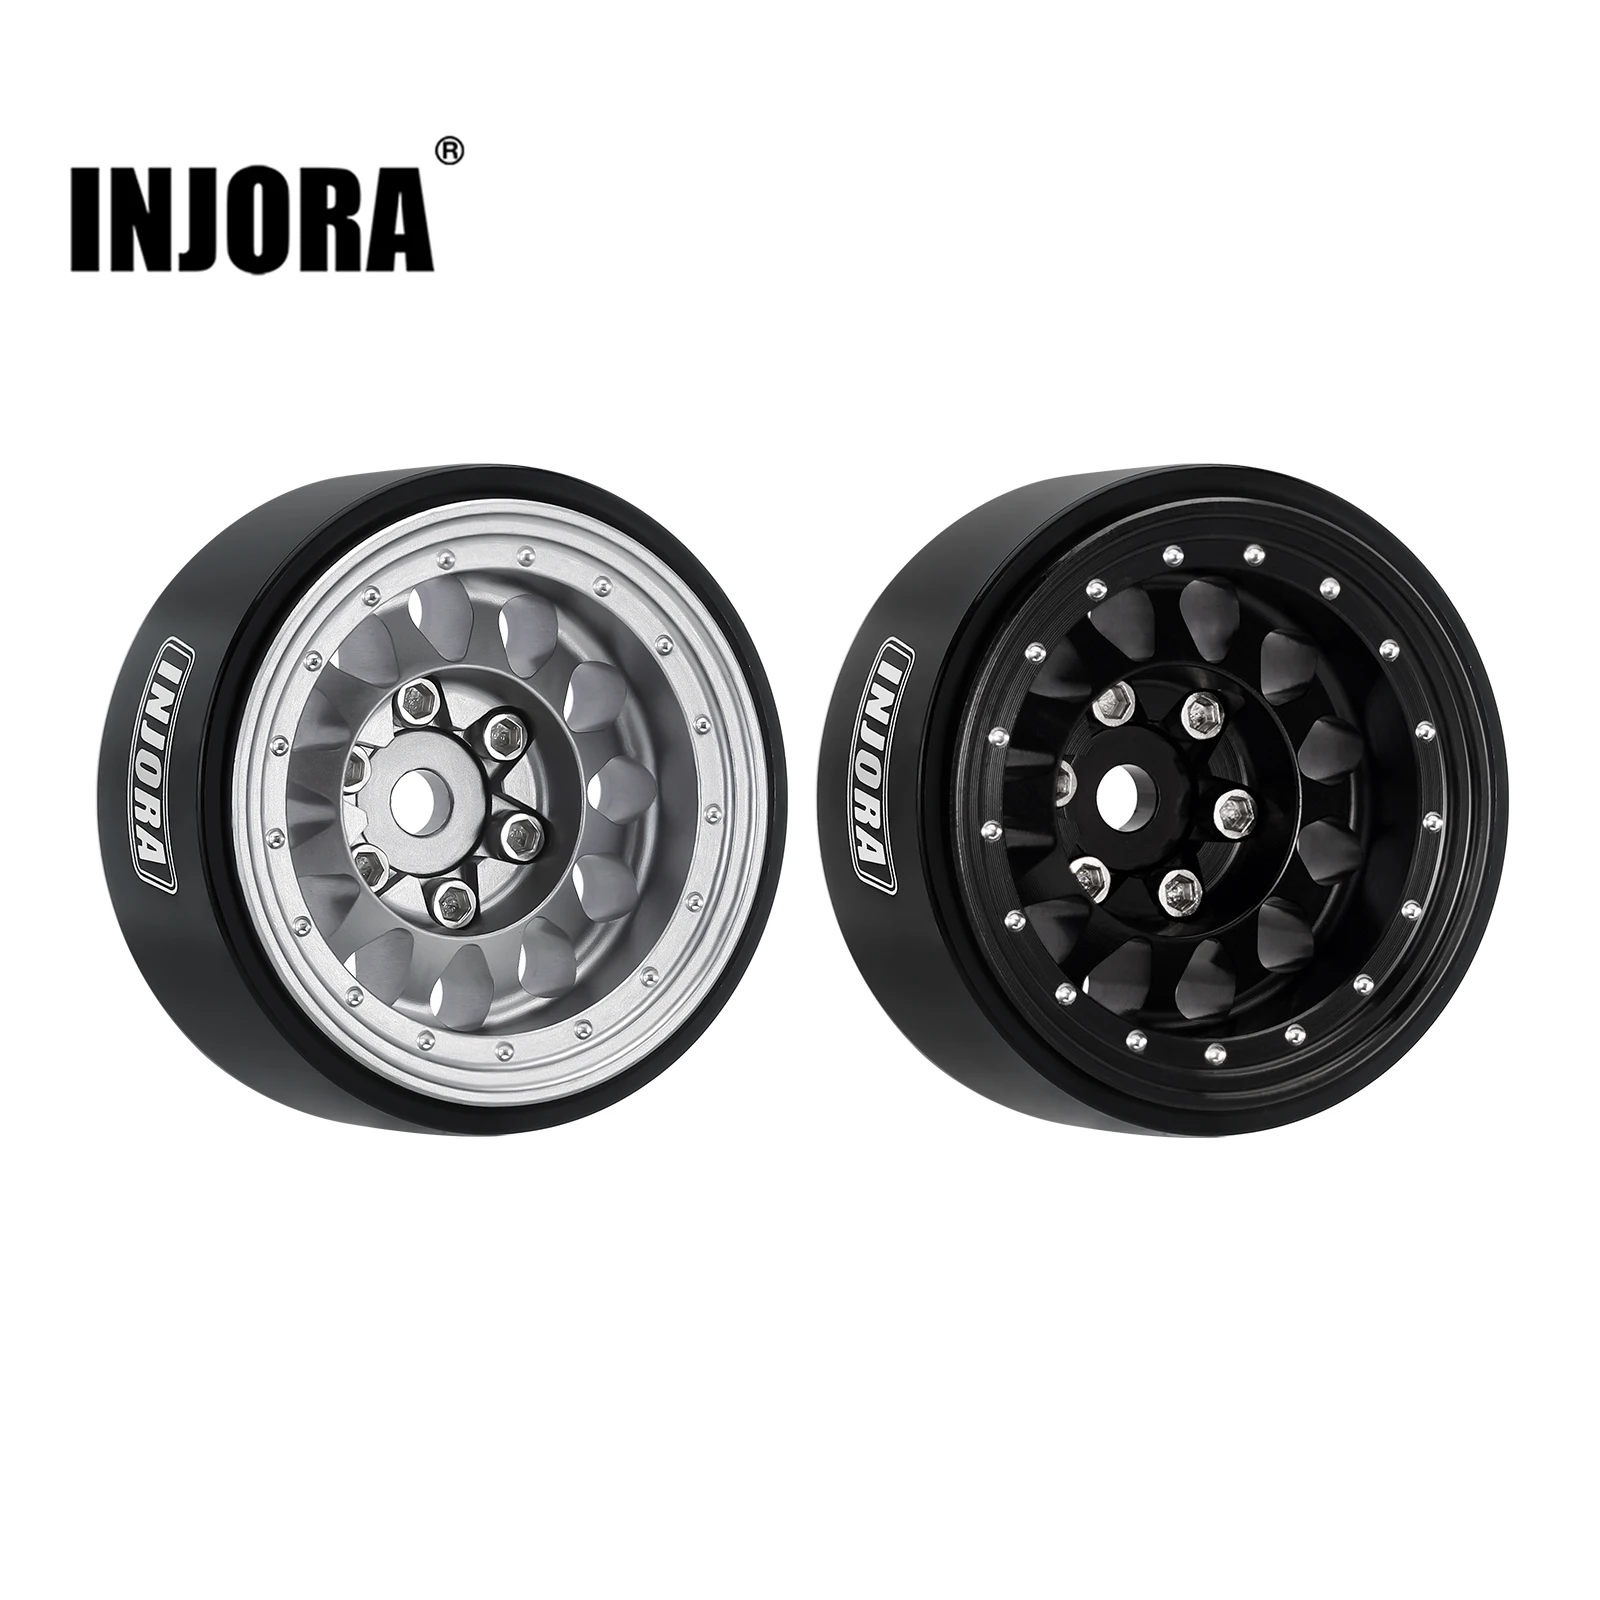 INJORA-1-0-Plus-Aluminium-Beadlock-Wheel-Rims-for-1-24-1-18-RC-Crawler-SCX24.webp